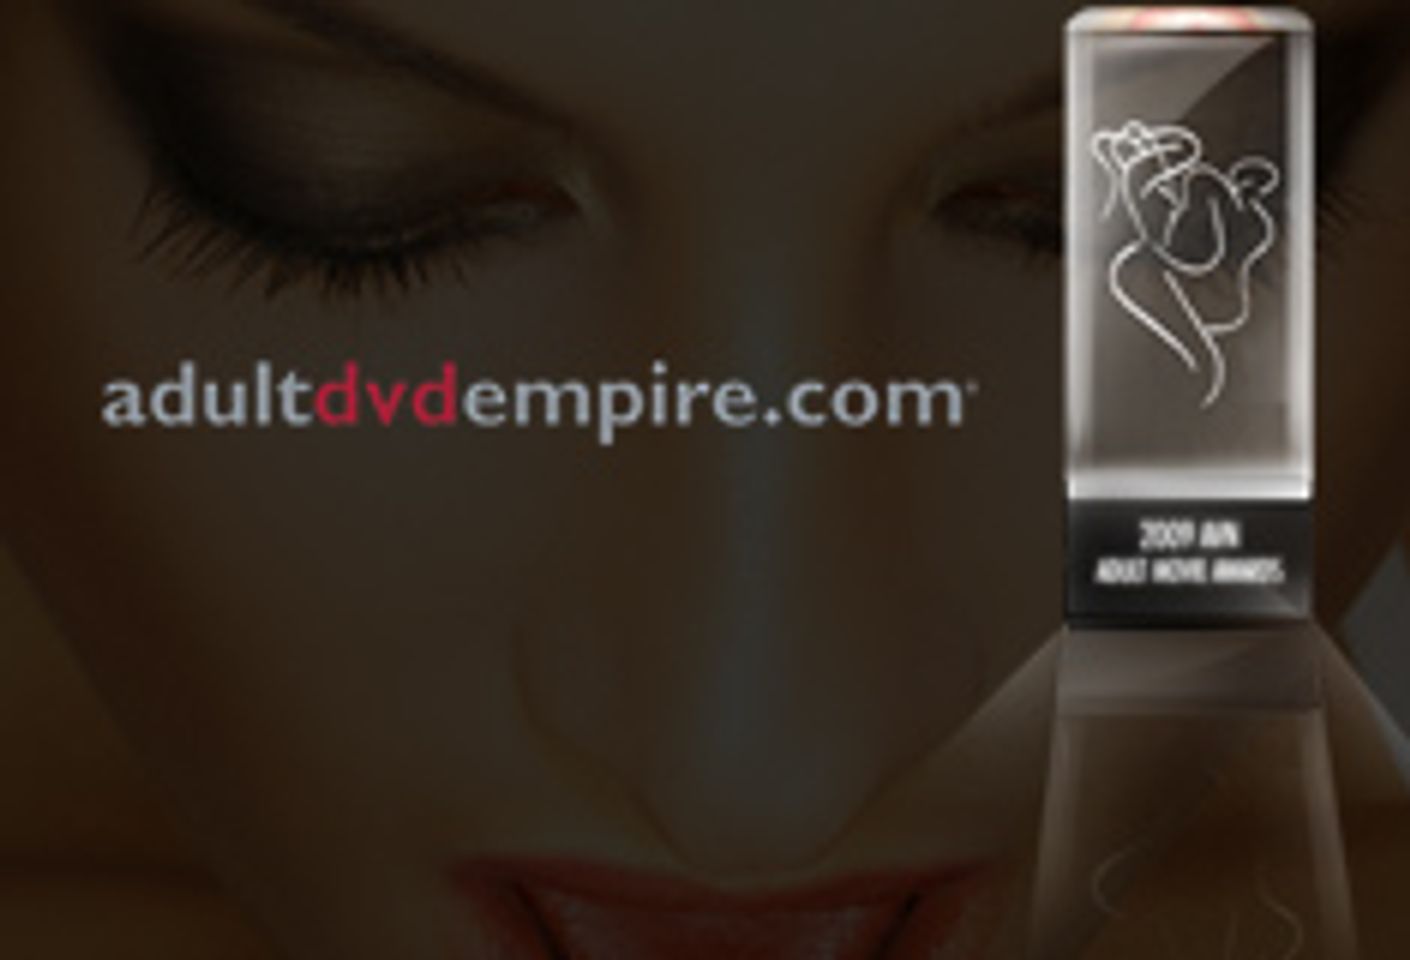 Adult DVD Empire Spotlights 2009 AVN Awards Contenders